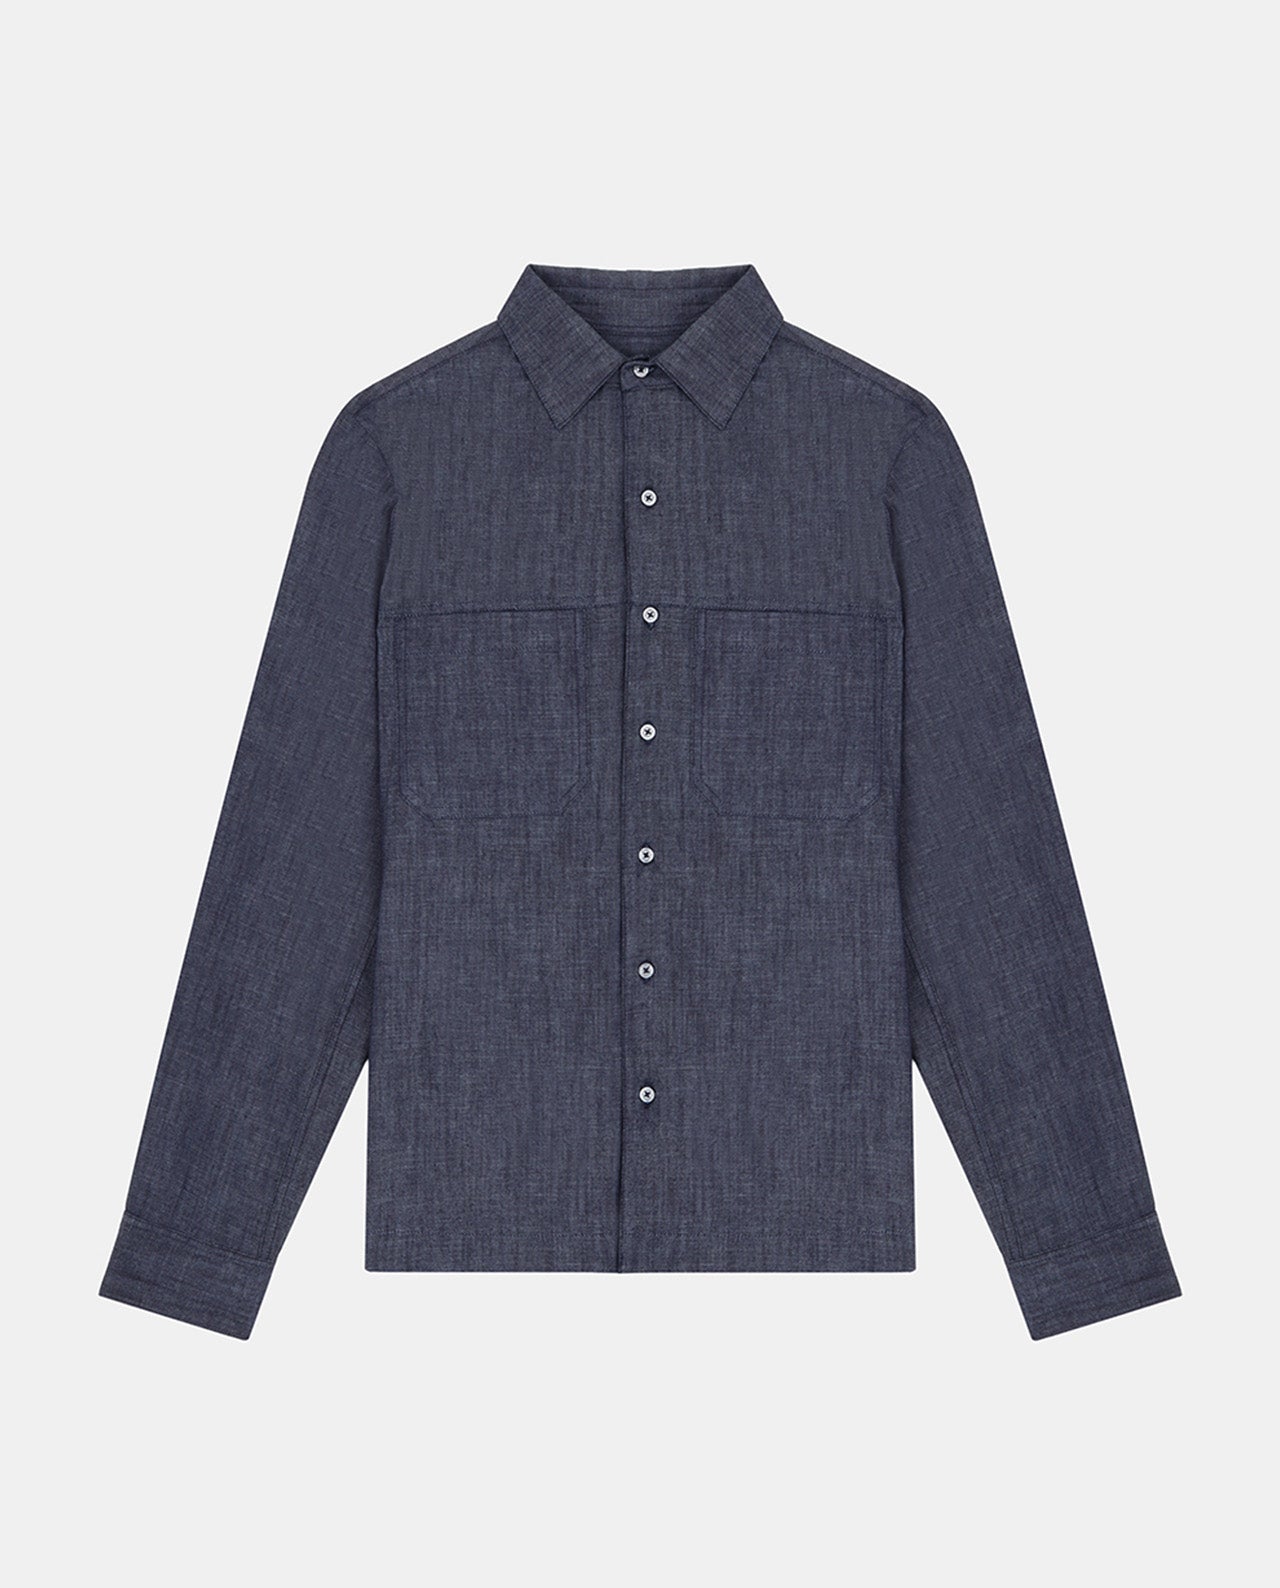 marché commun noyoco chemise homme chambray coton biologique fabriquée en Europe